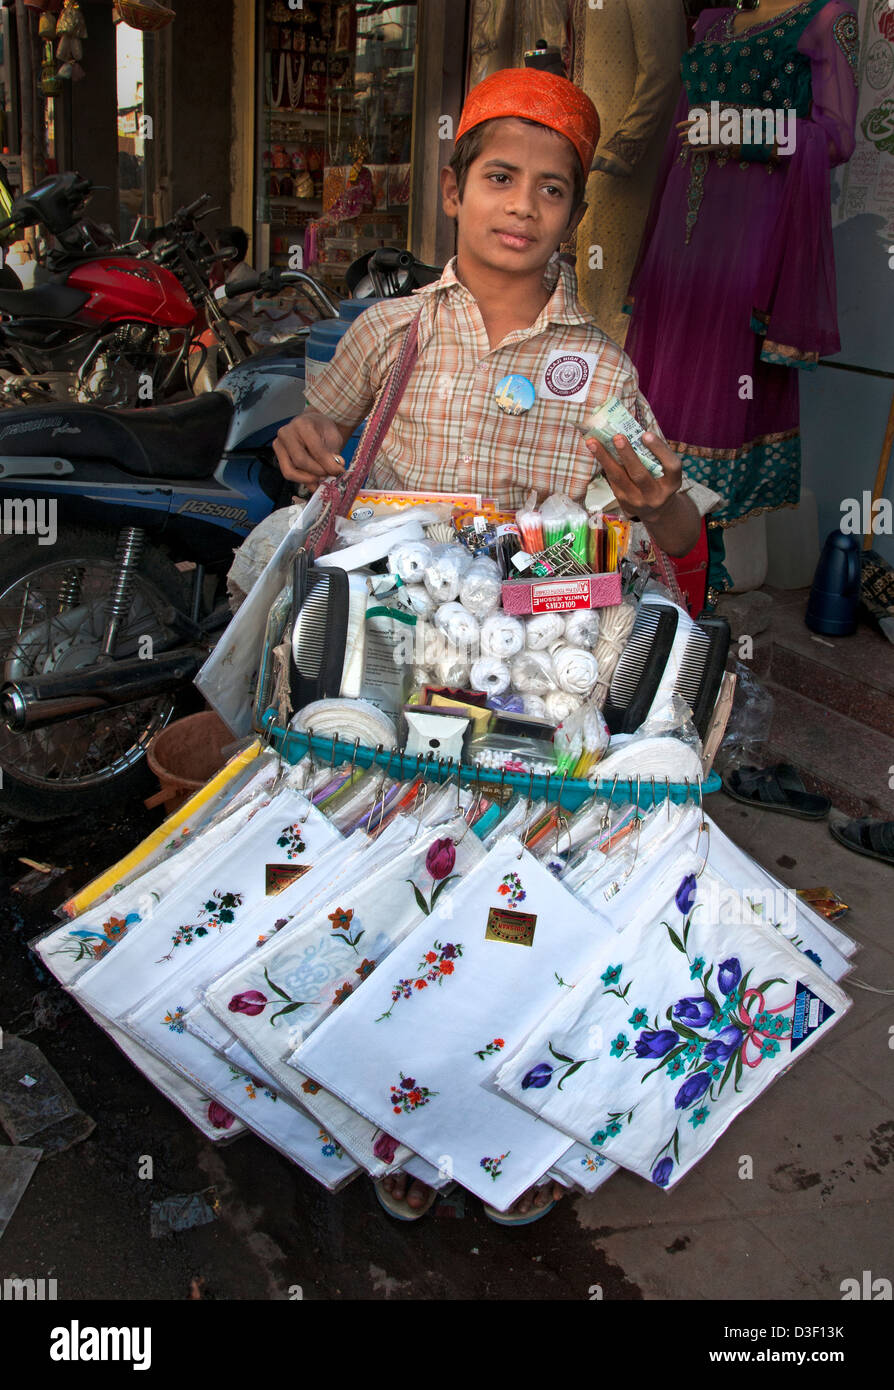 Le travail des enfants la mercerie Hyderabad Andhra Pradesh Inde le Laad Bazaar colporteur colporteur hawker packman trafiquant Banque D'Images